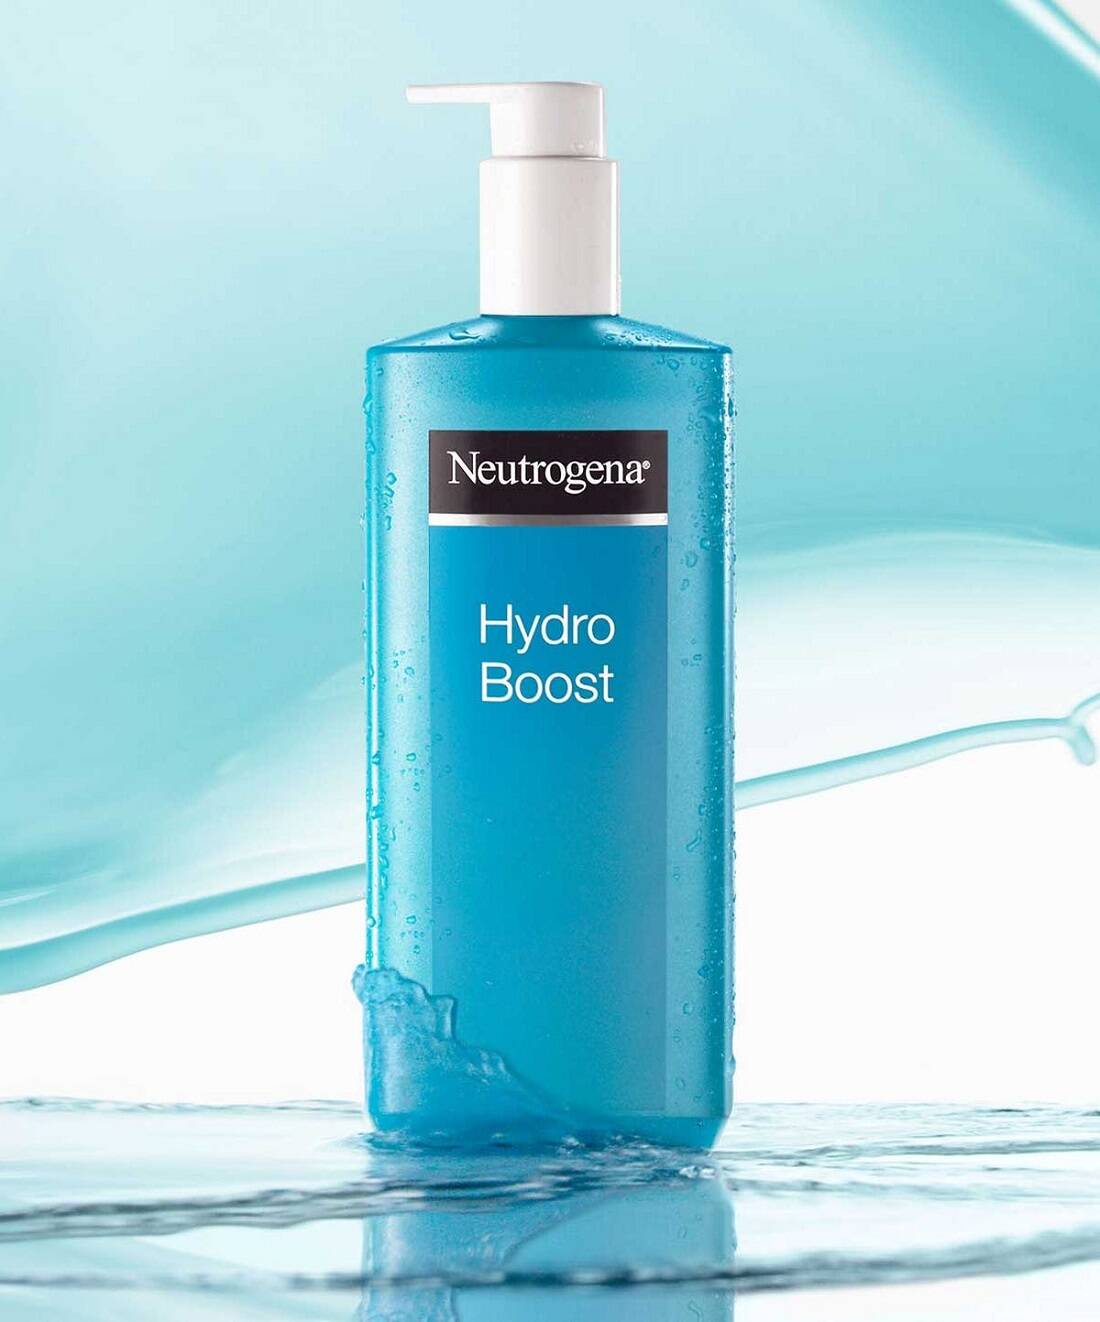 ژل کرم آبرسان بدن Hydro Boost نیتروژنا (هیدرو بوست نوتروژنا) Neutrogena Hydro Boost Body Gel Cream 400ml